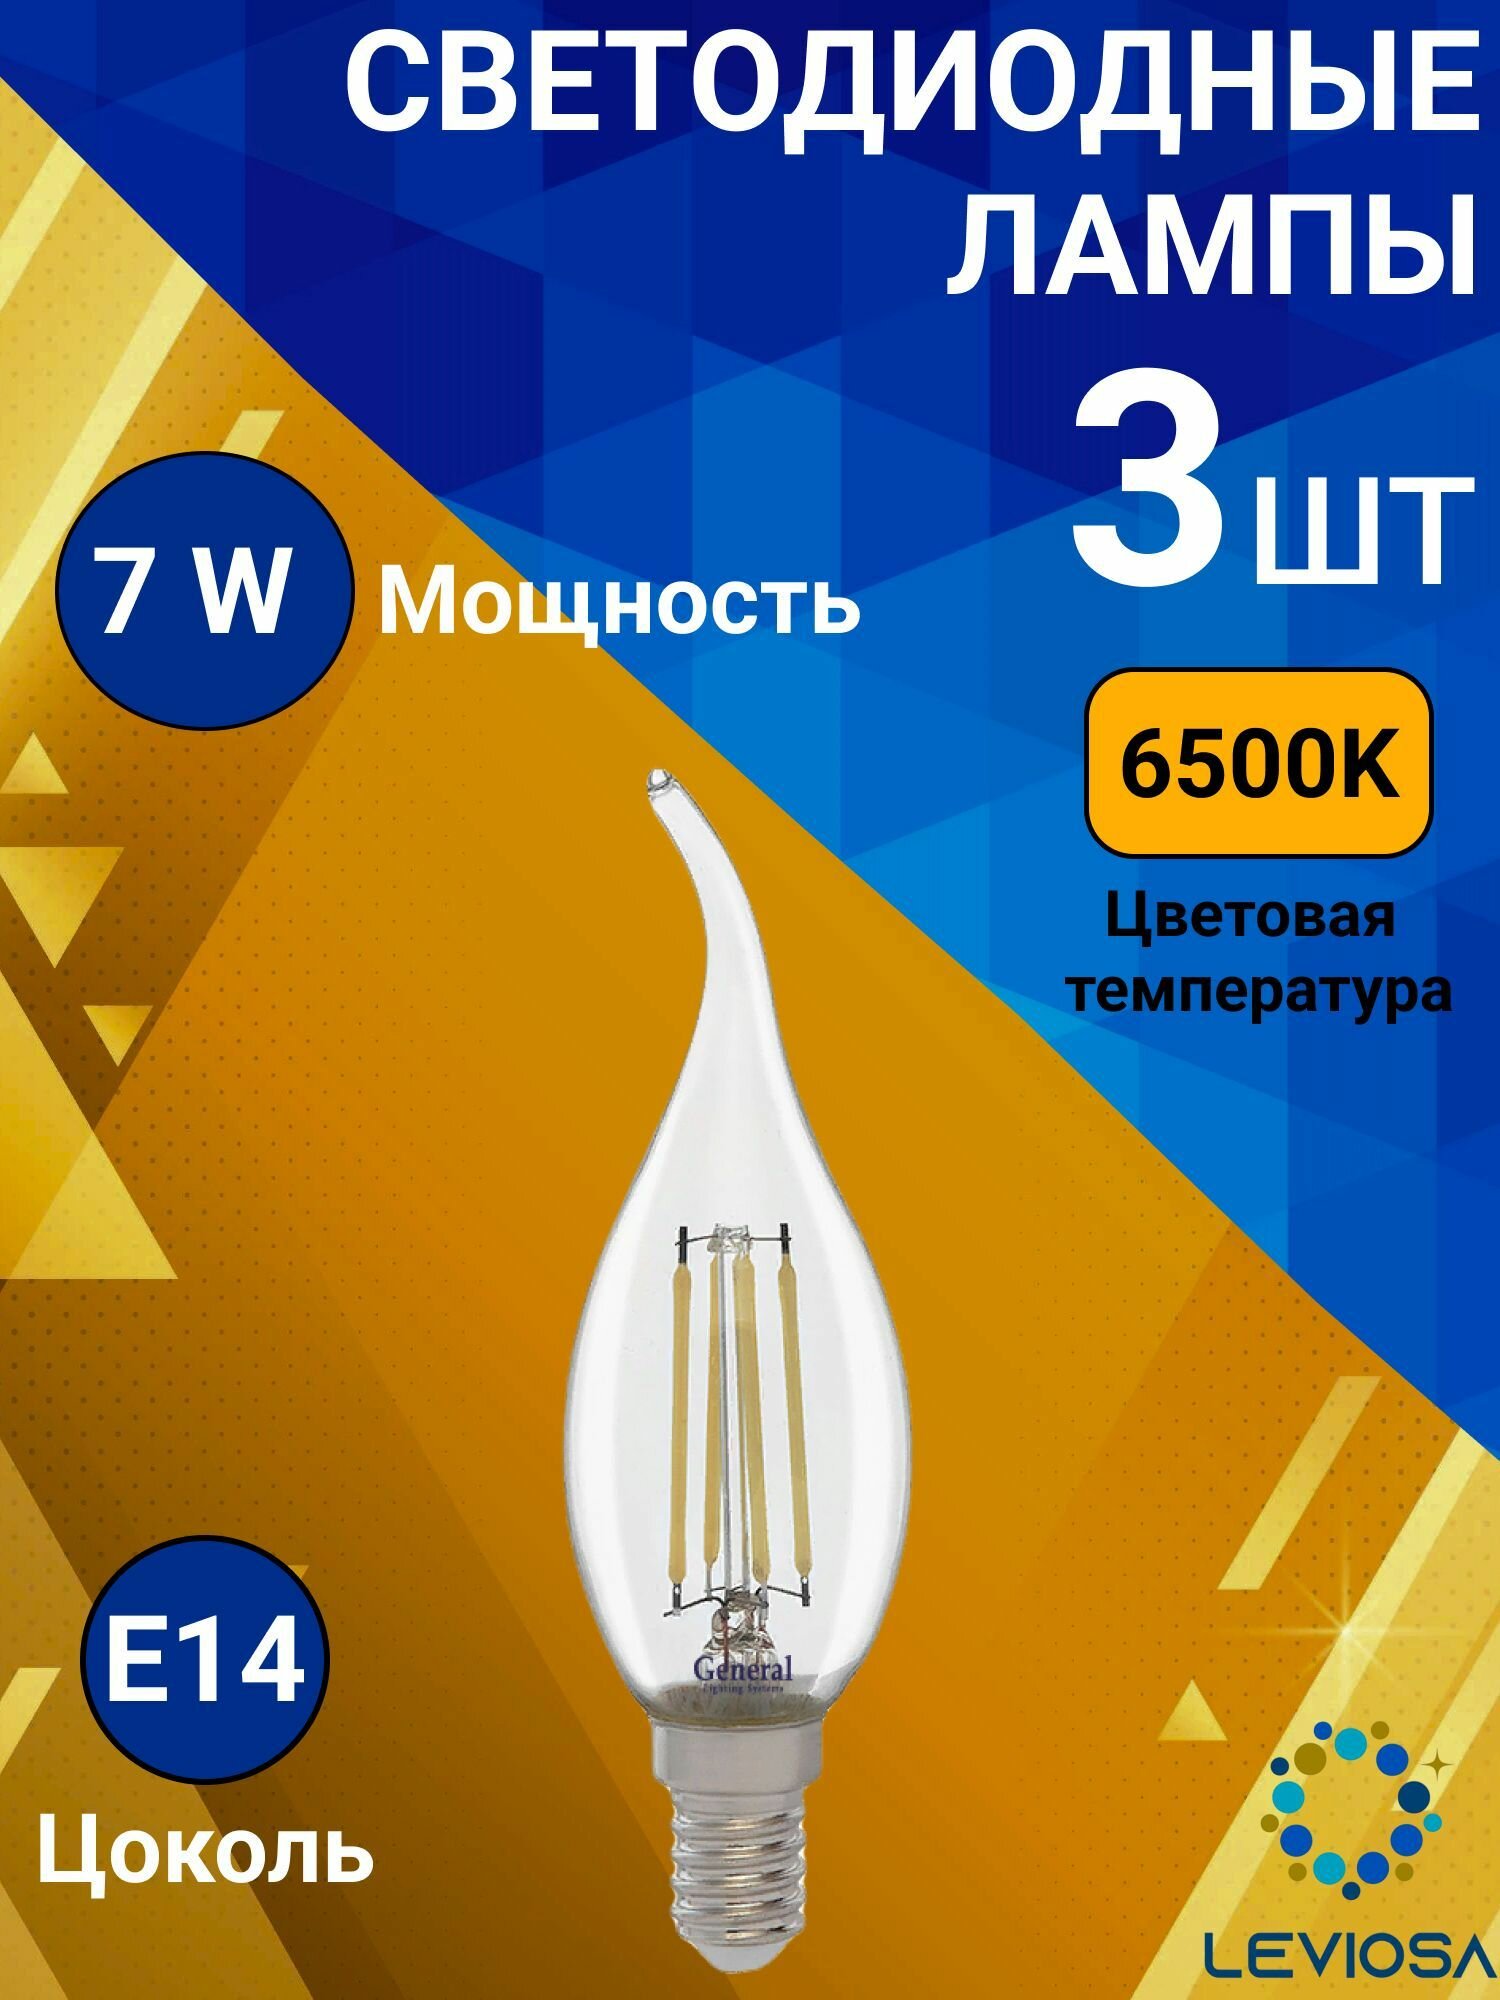 General, Лампа светодиодная филаментная, Комплект из 3 шт, 7 Вт, Цоколь E14, 6500К, Форма лампы Свеча на ветру